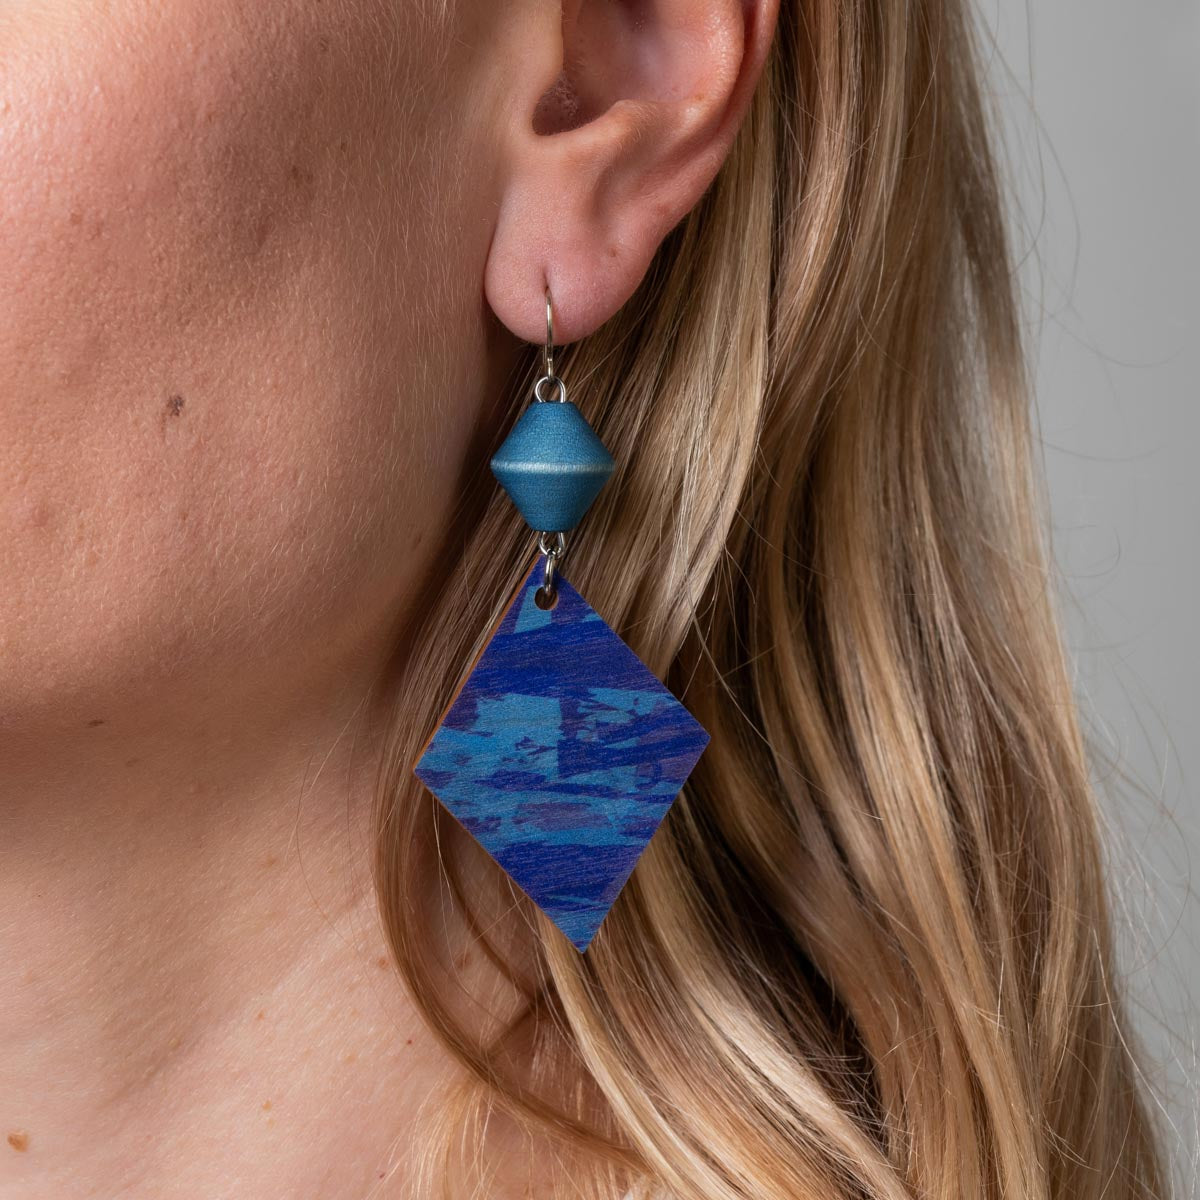 Tallinna earrings, blue